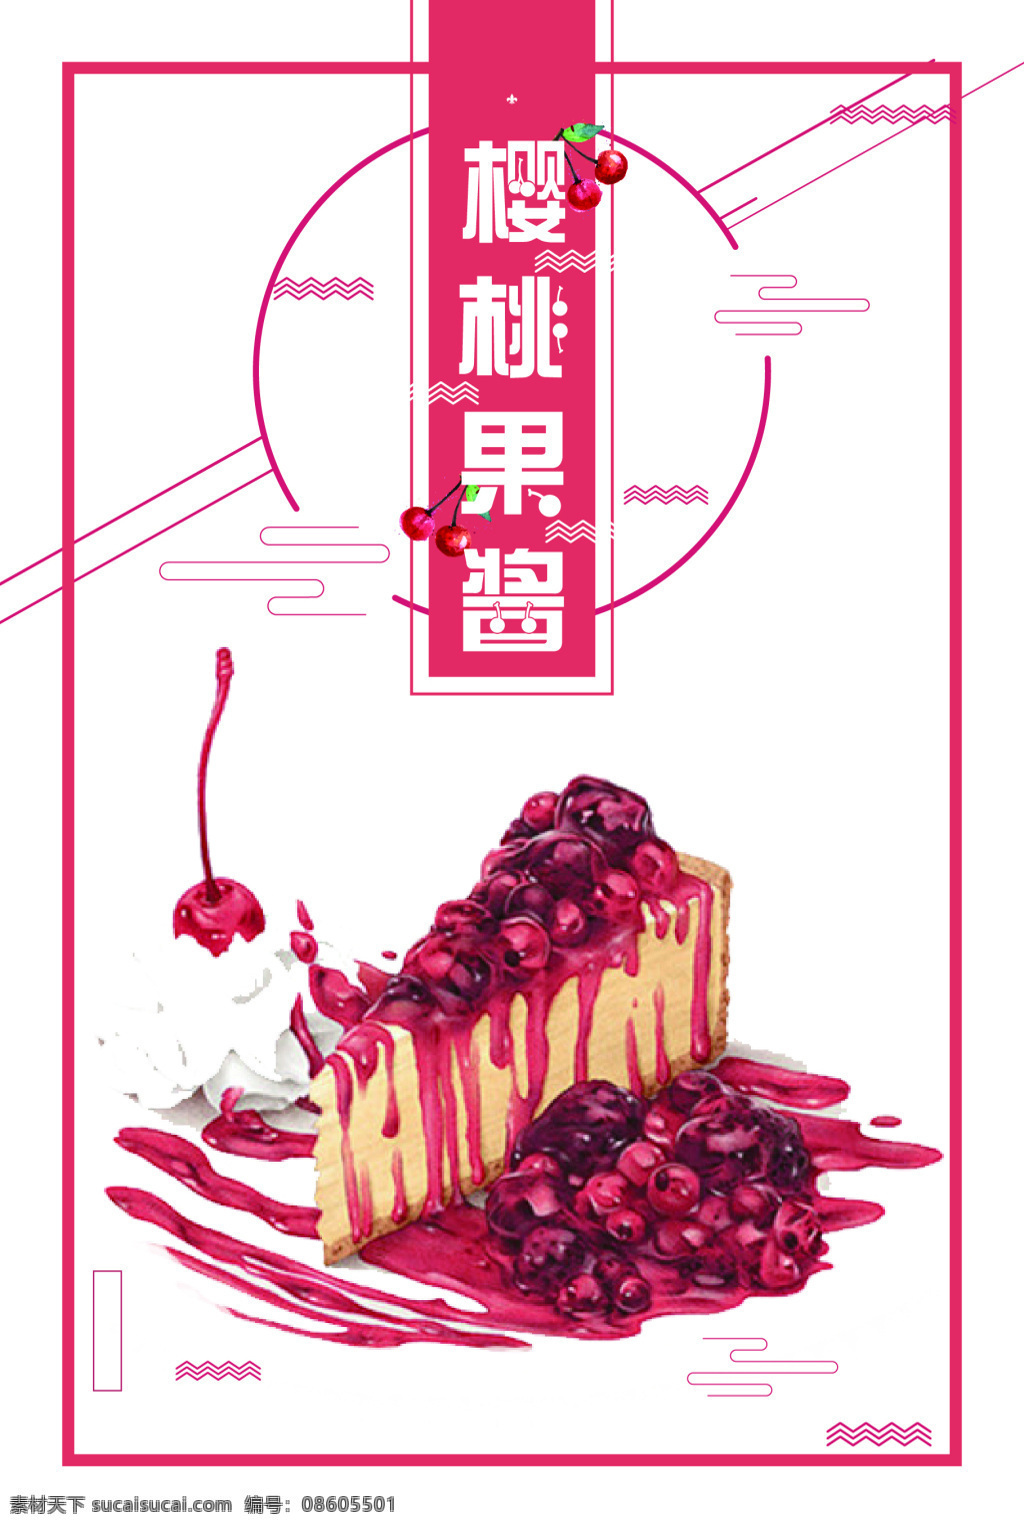 矢量 创意 时尚 山楂 果酱 背景 果蔬 果子 海报 红色 美味 山楂果酱 水果 味道 新鲜 新鲜水果 樱桃 展板 自然